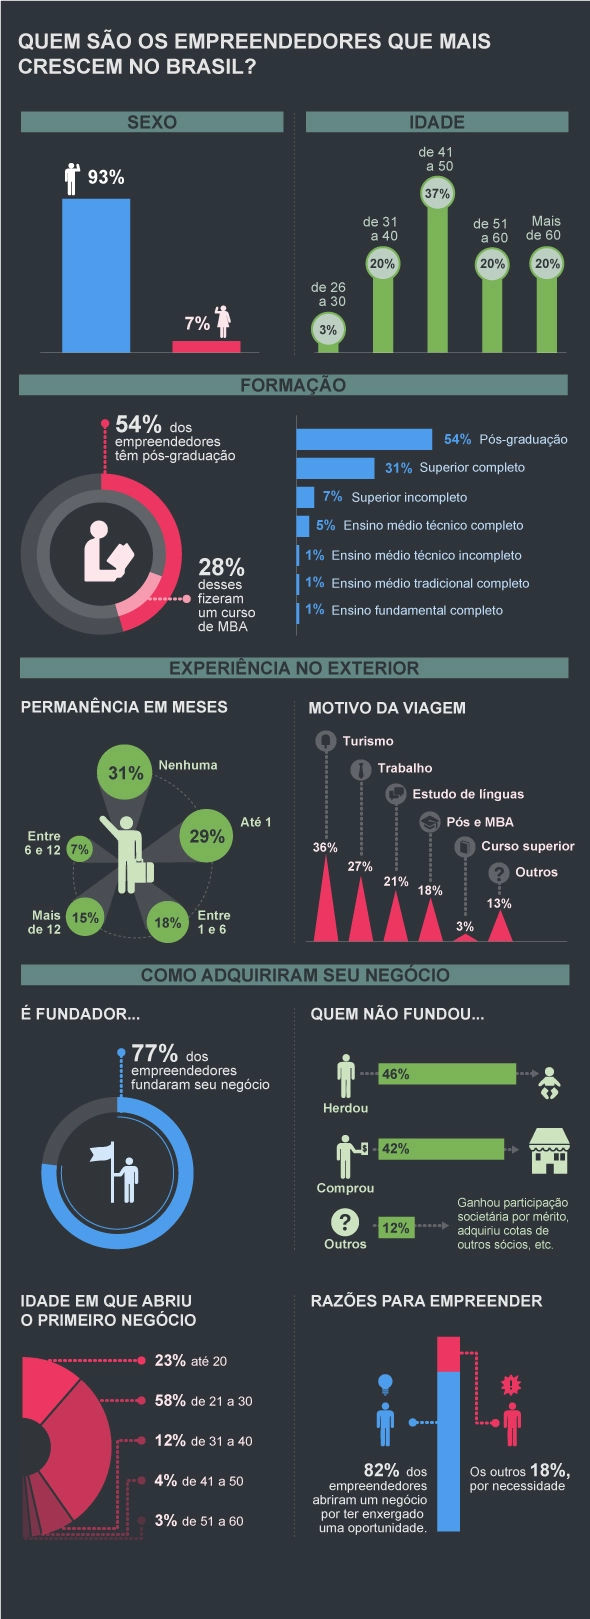 Veja o infográfico com o perfil dos empreendedores brasileiros.